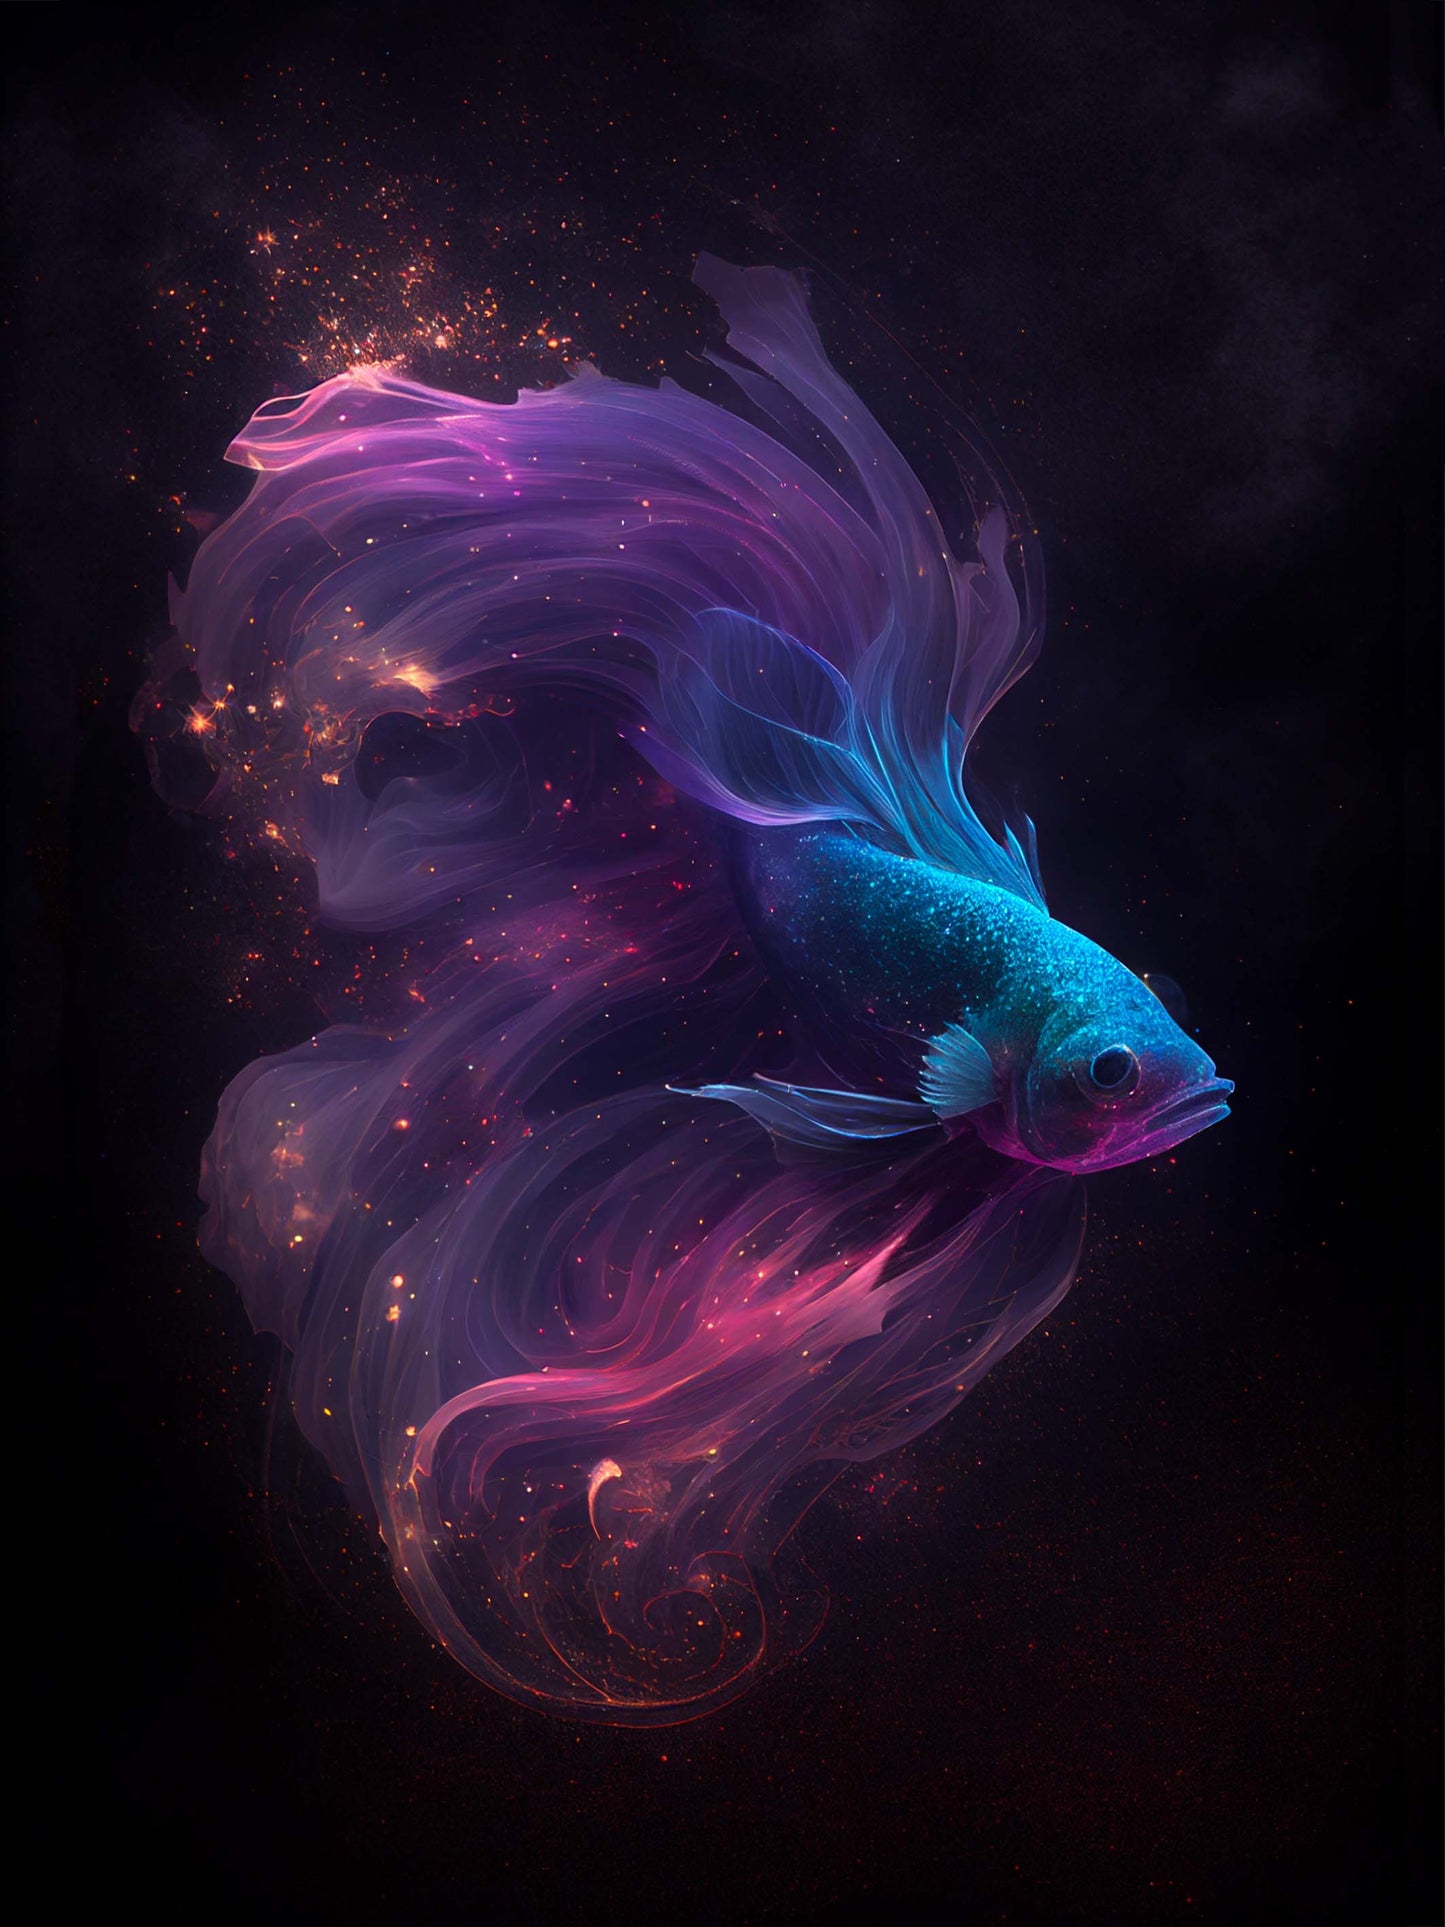 Tableau poisson combattant, reflets irisés, univers étoilé, sérénité, poésie.